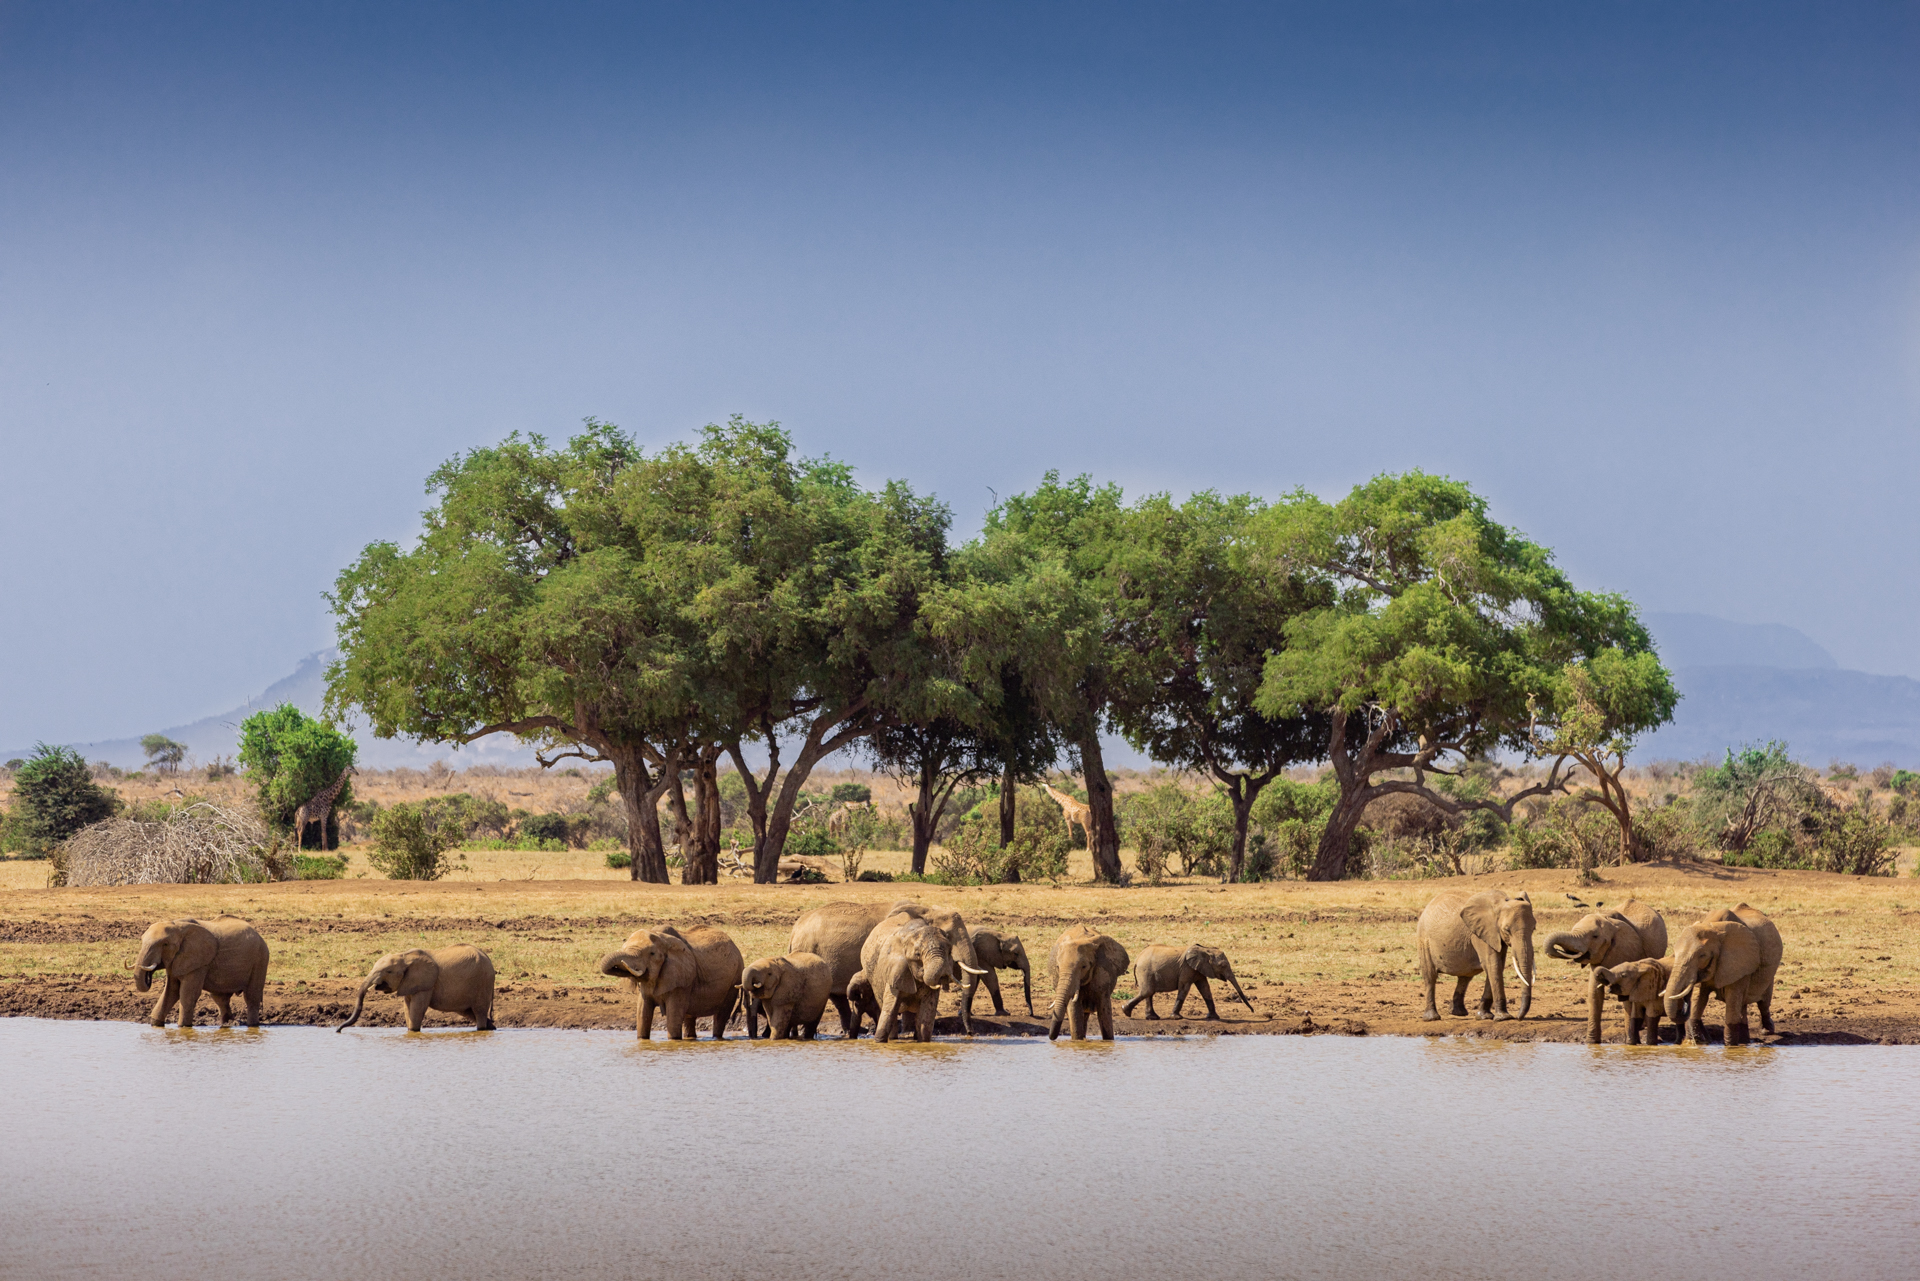 Une famille d'éléphants boit de l'eau dans la réserve de Tsavo EST, Kenya - A family of elephants drink water in the Tsavo East Game Reserve, Kenya / Loxodonta